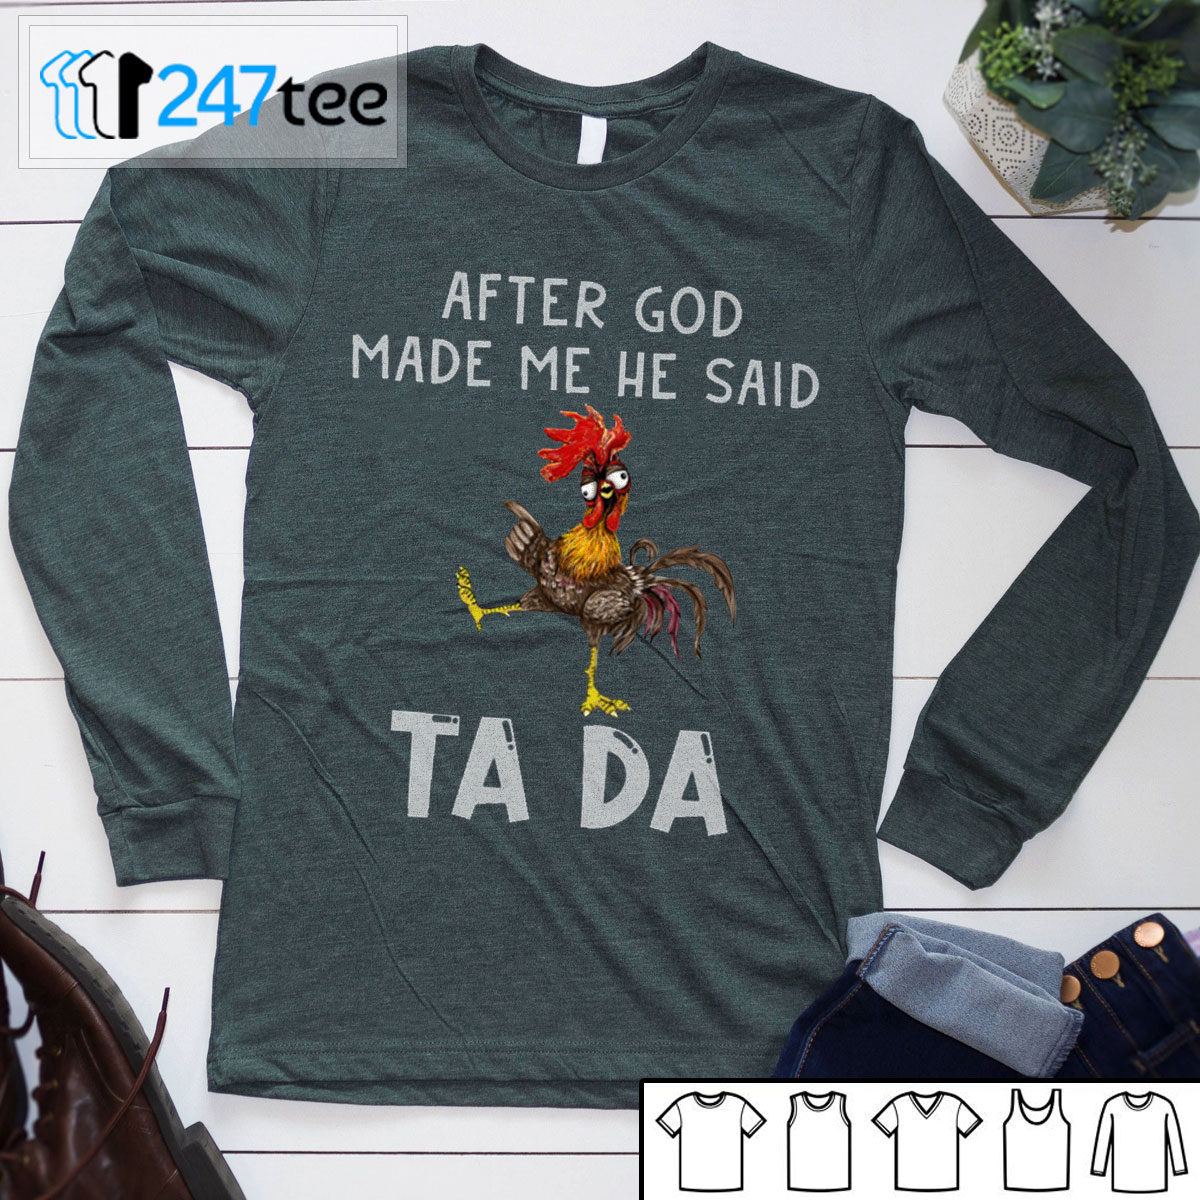 After god made me he said Tada T-shirt